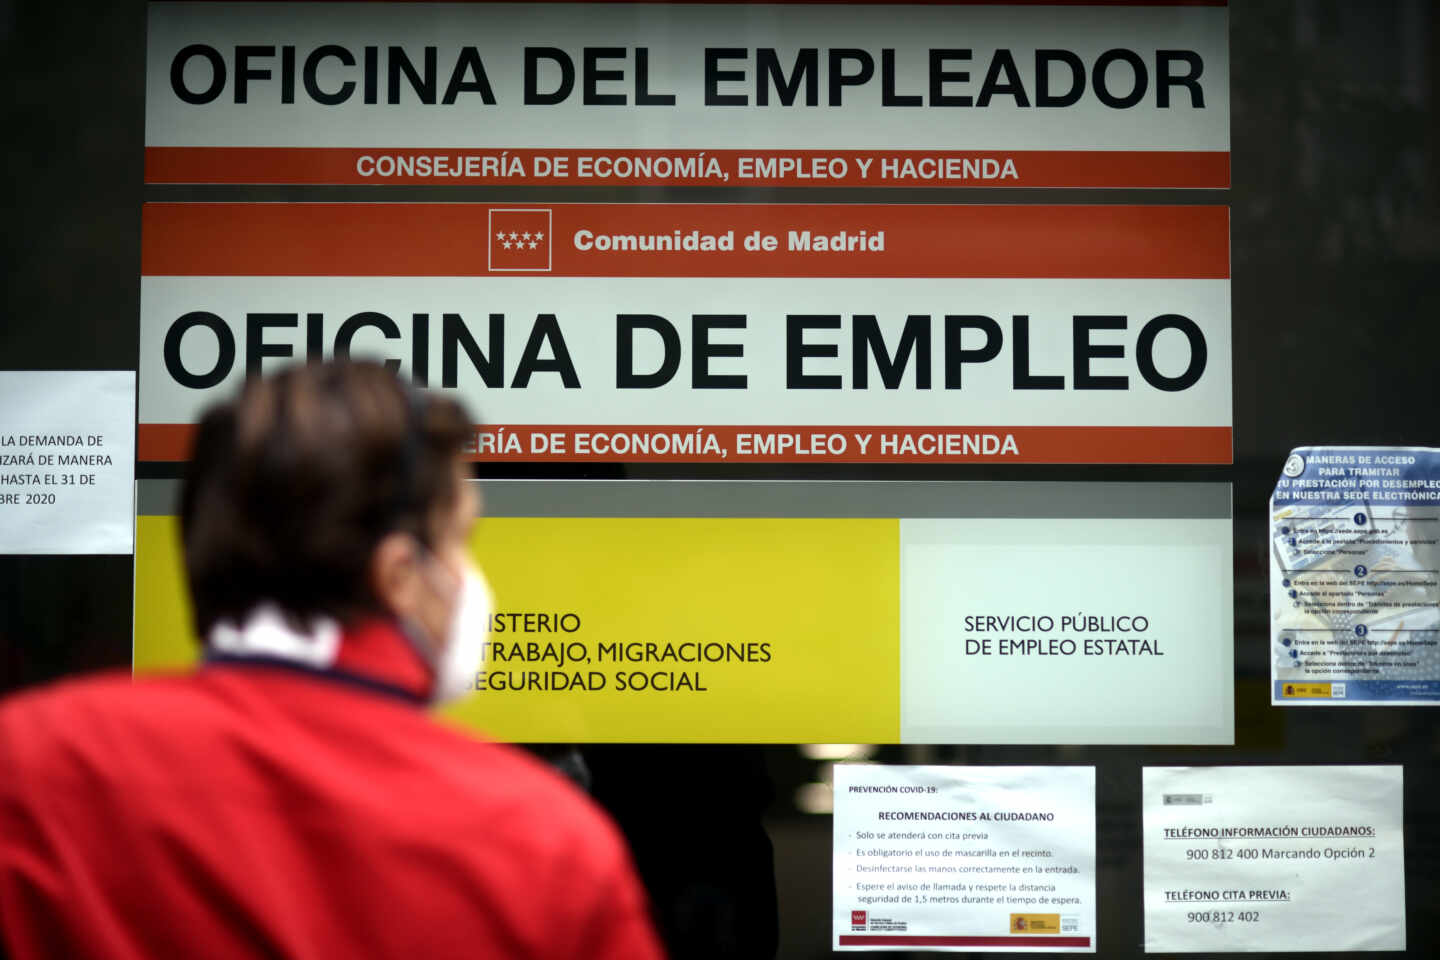 Una persona pasa al lado de una Oficina de Empleo en Madrid.